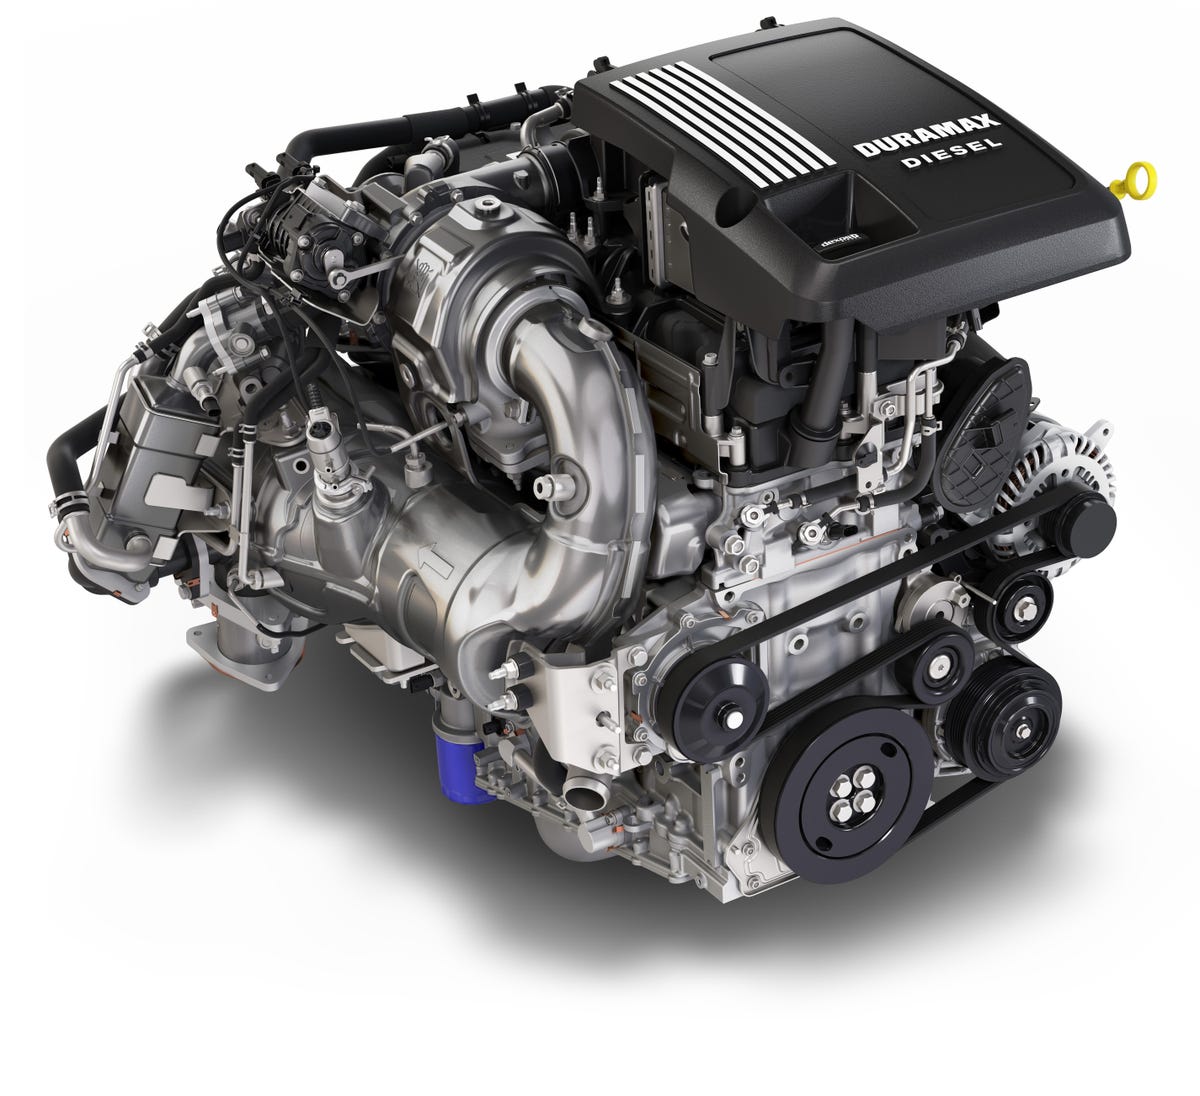 GMC Sierra 1500's 3.0-liter Duramax diesel inline-six engine